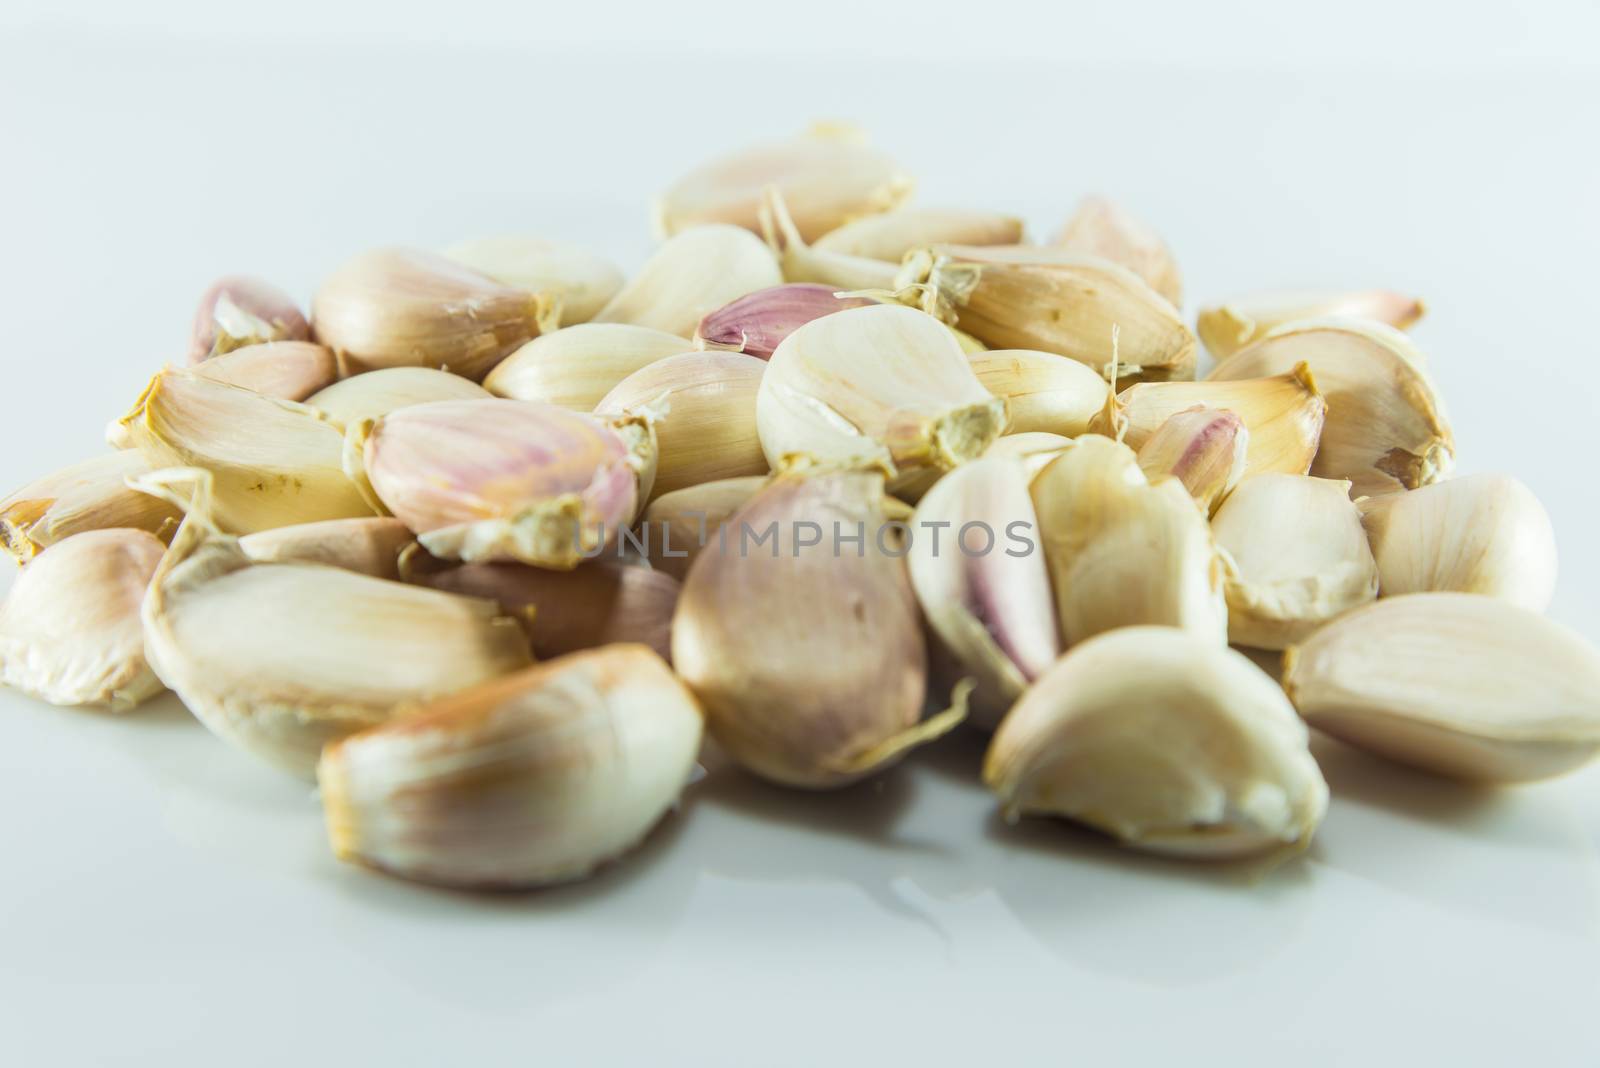 Garlic on white background, Pungent odor spices